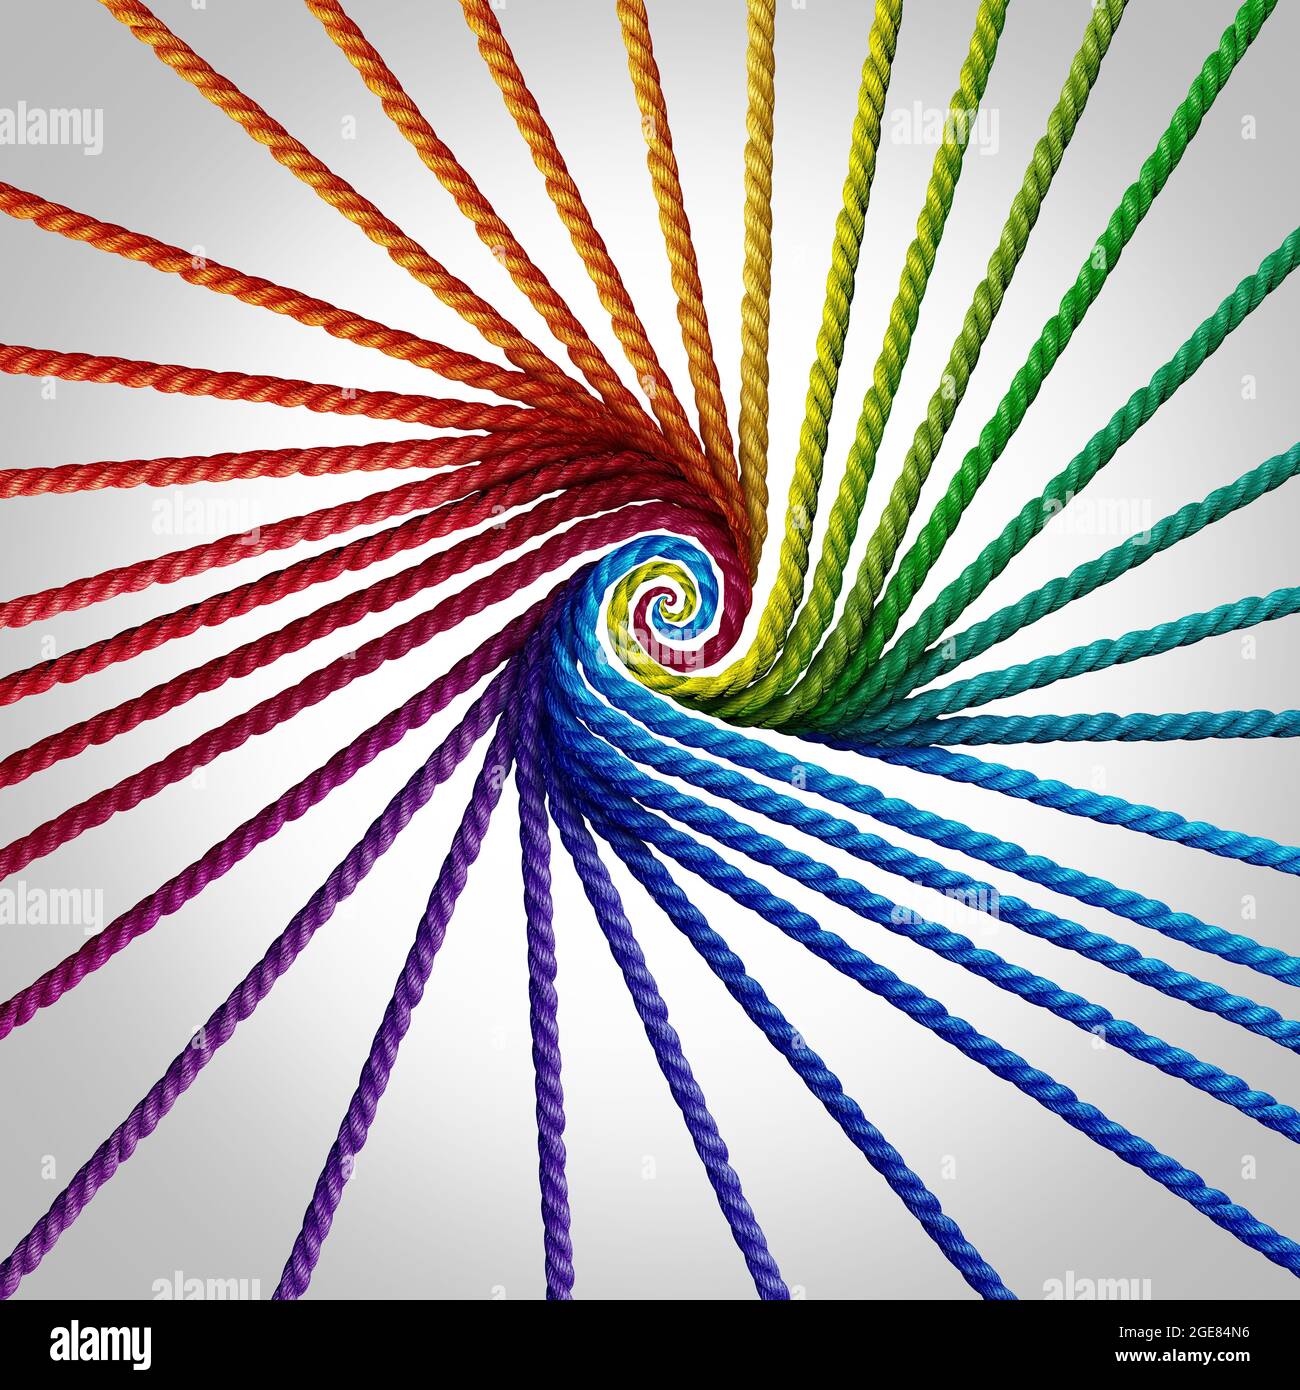 Gruppenpartner vereinte und vielfältige Partnerschaft als Schwerpunkt mit Seilobjekten, die zu einem Spektrum von Regenbogenfarben kombiniert werden. Stockfoto